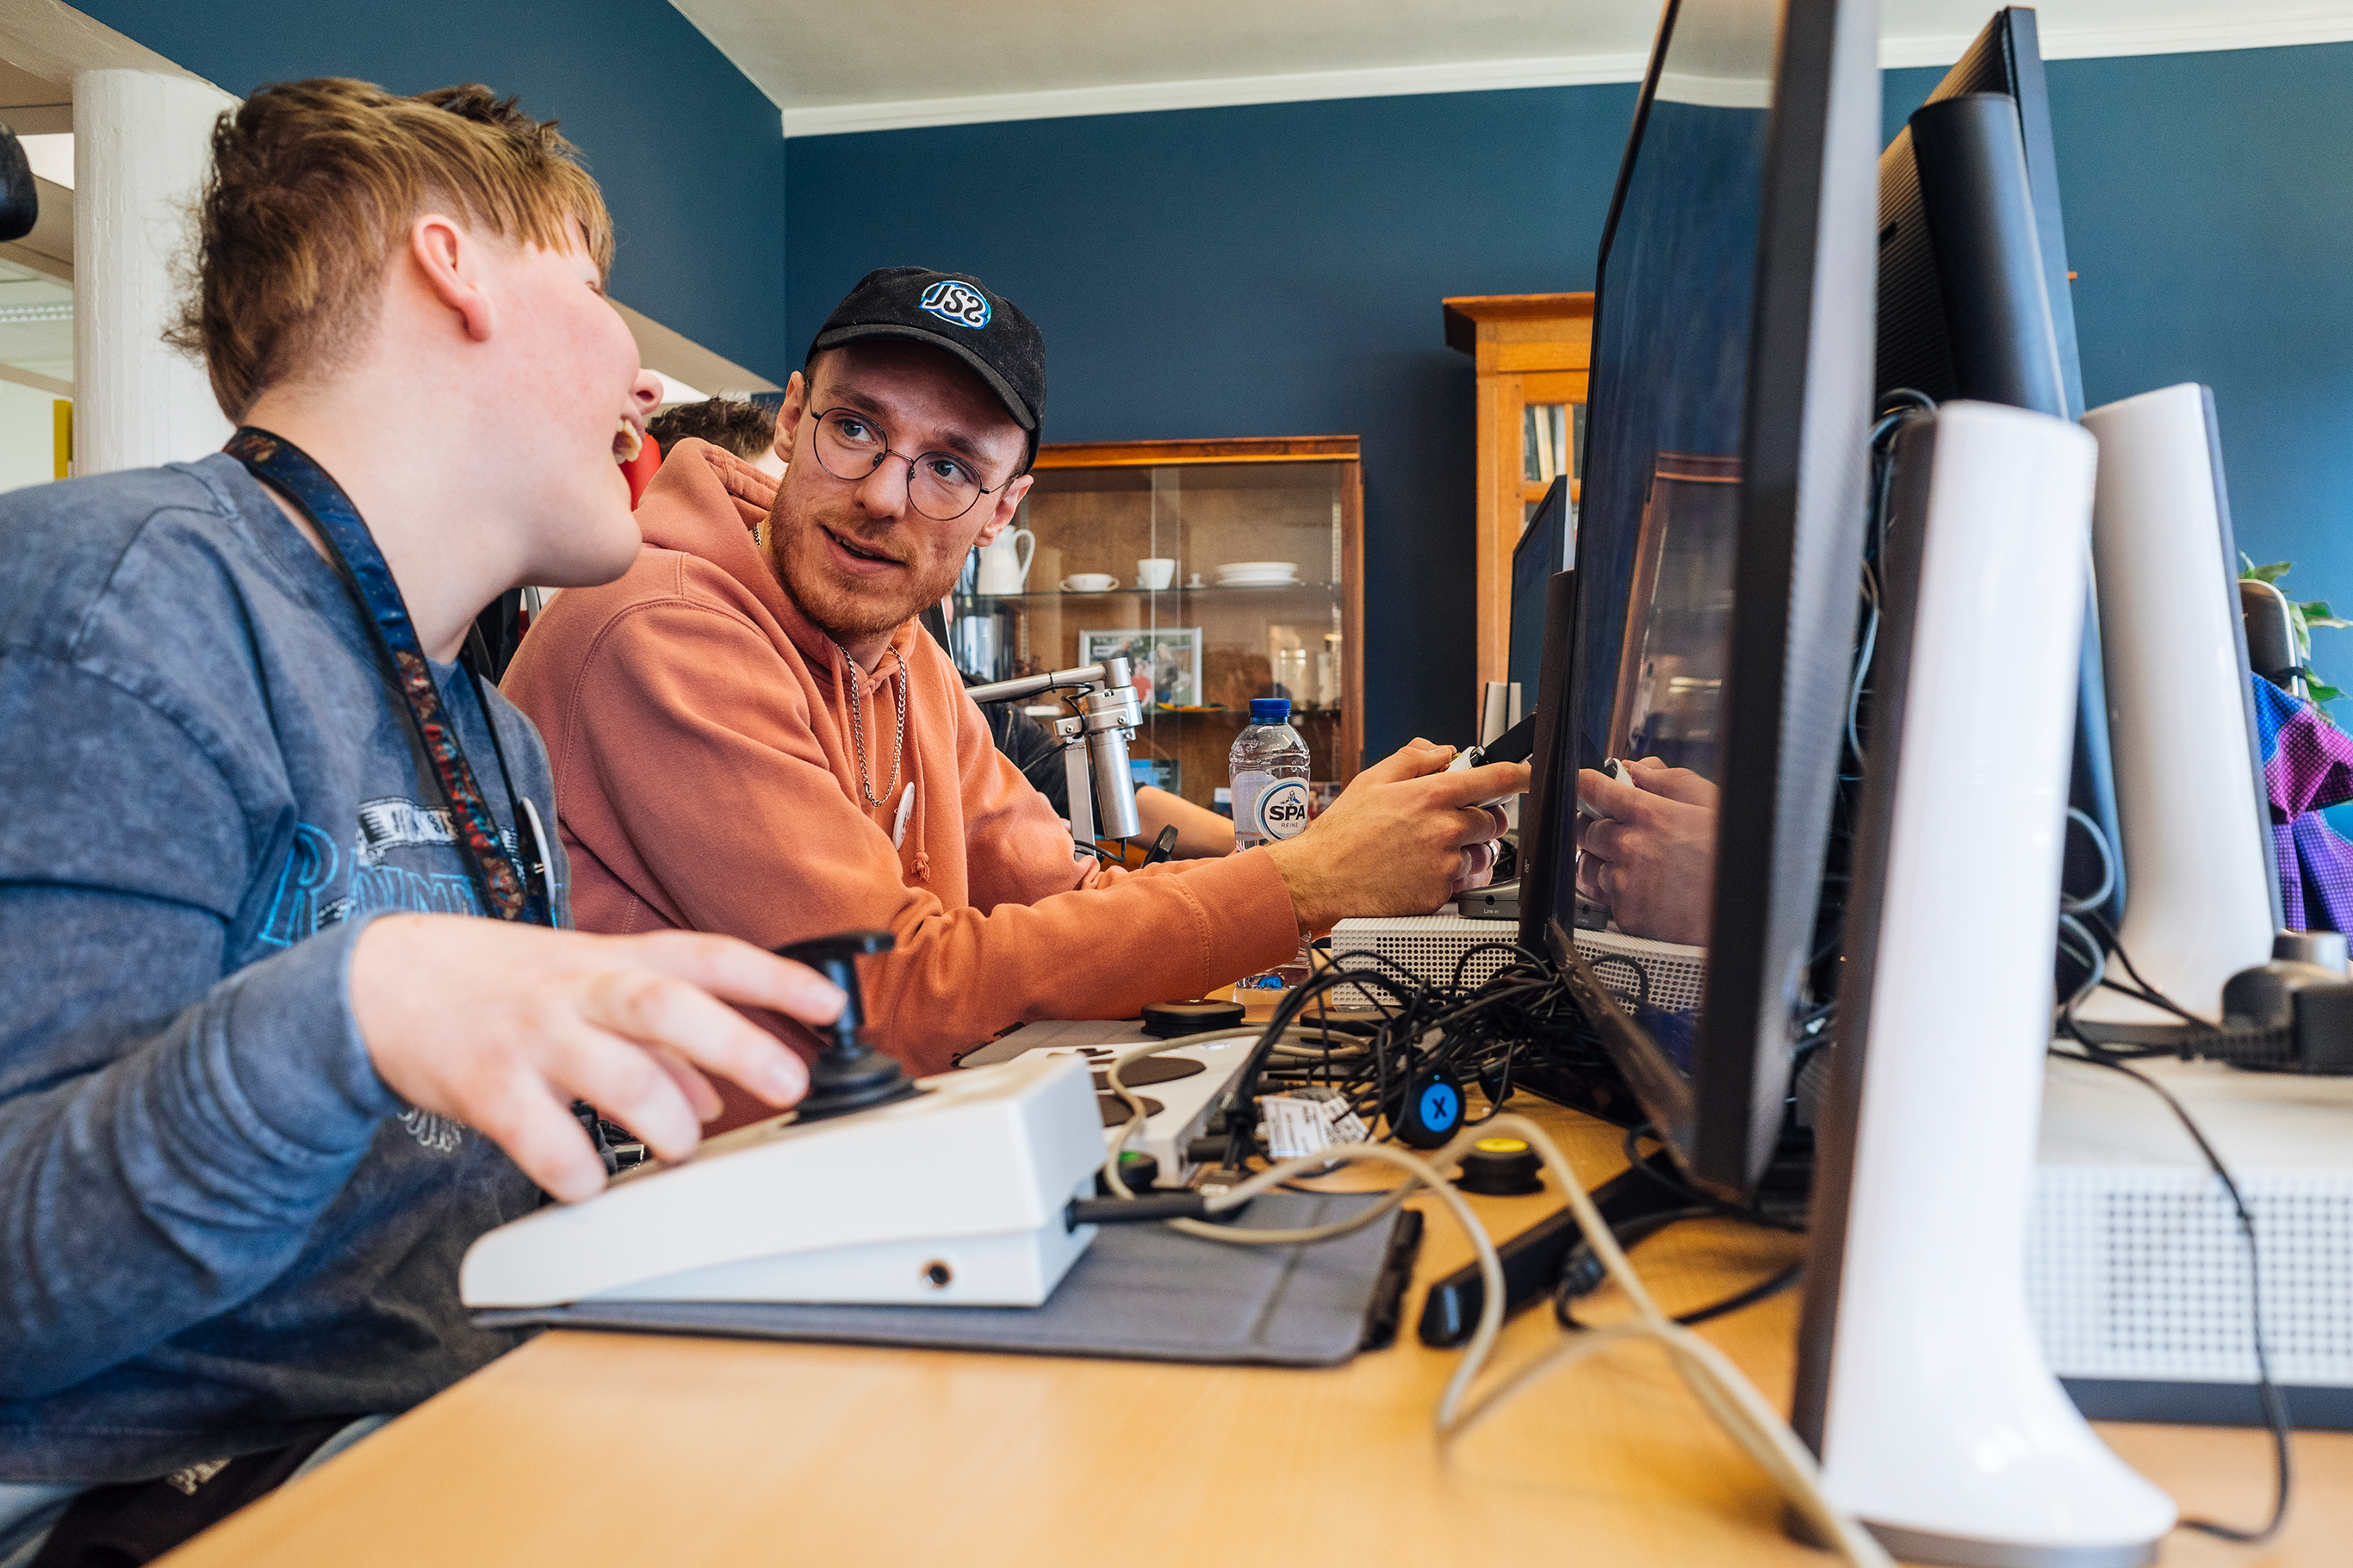 Nederlands eerste volledig adaptieve gameroom voor kinderen met een handicap nu officieel geopend